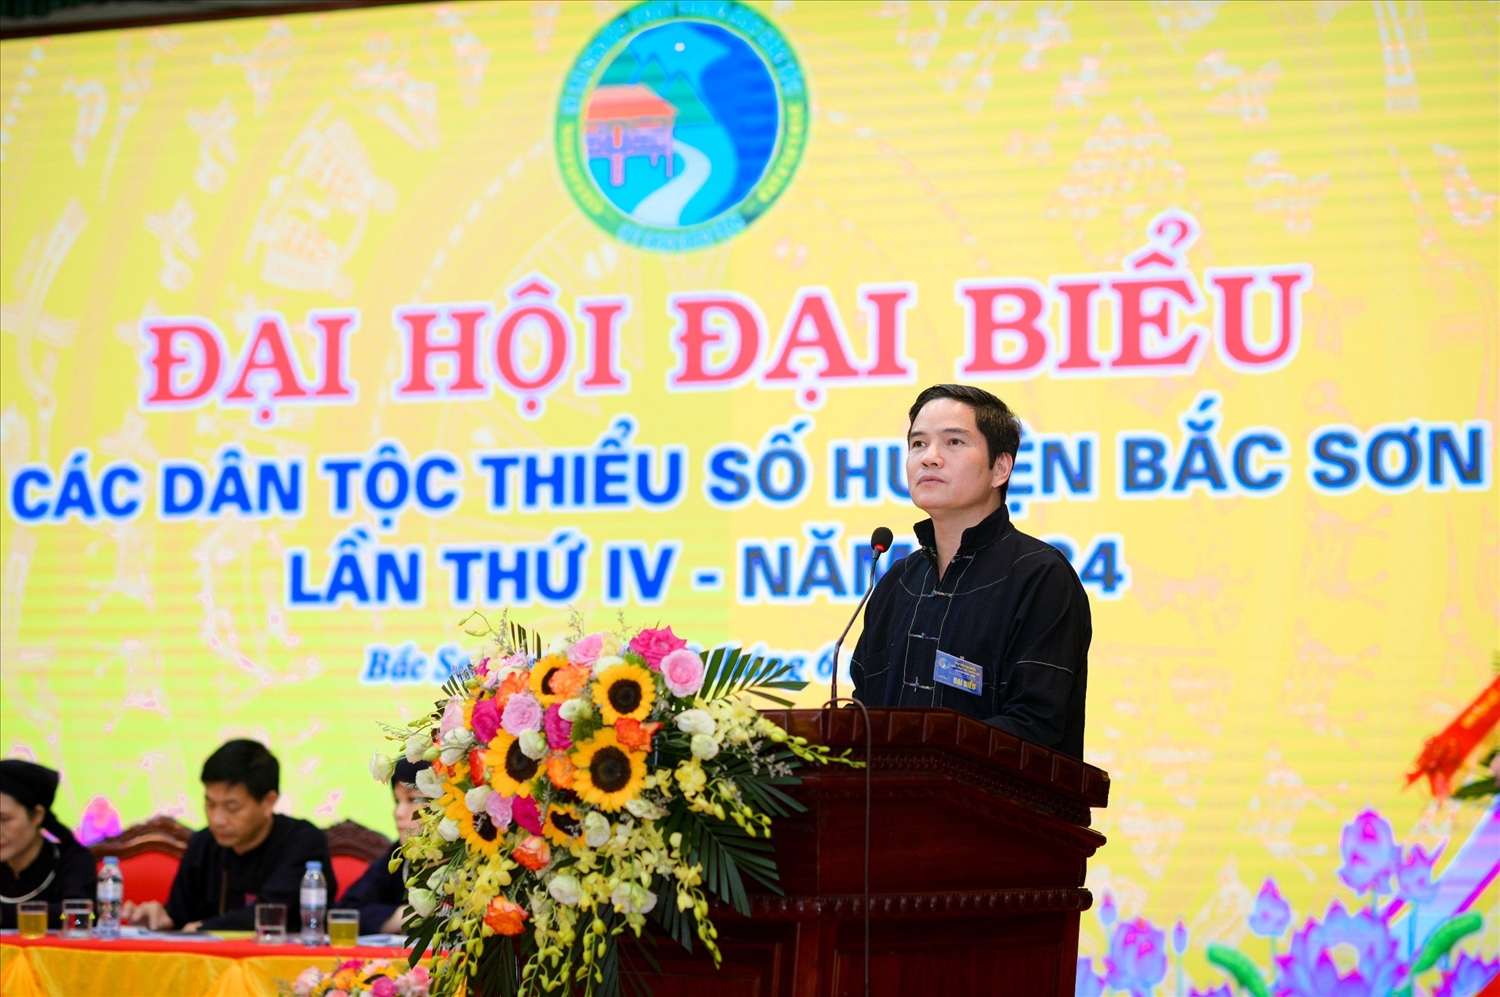 Ông Lâm Văn Viên, Phó Ban Dân tộc tỉnh Lạng Sơn phát biểu tại Đại hội